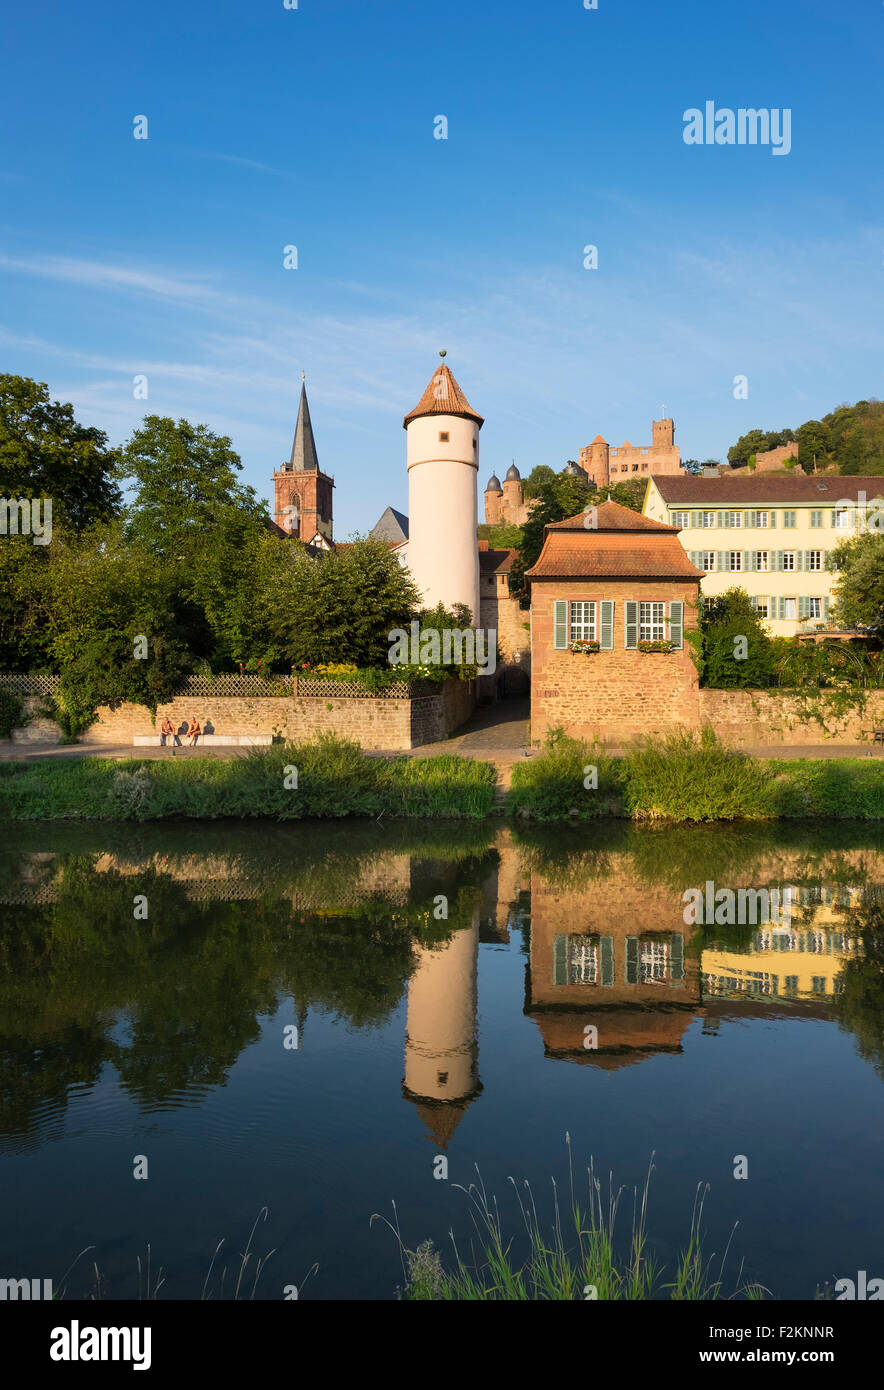 Río Tauber, Kittsteintor, Torre Roja, Iglesia de la ciudad y ruinas de castillos, Wertheim, Baden-Württemberg, Alemania Foto de stock